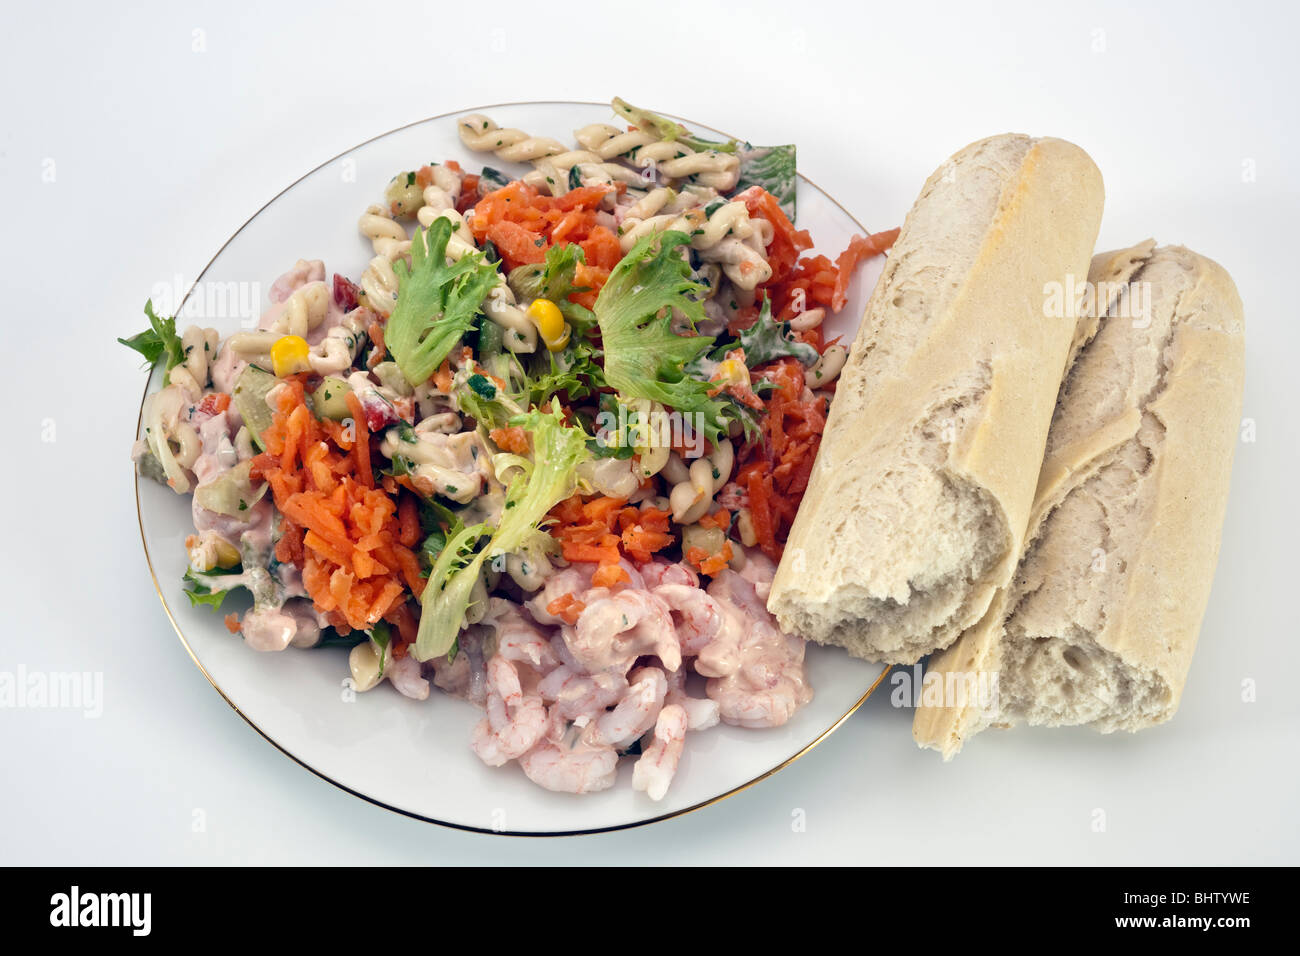 Salade de langoustines et de pâtes sur une plaque blanche avec une baguette brisée Banque D'Images